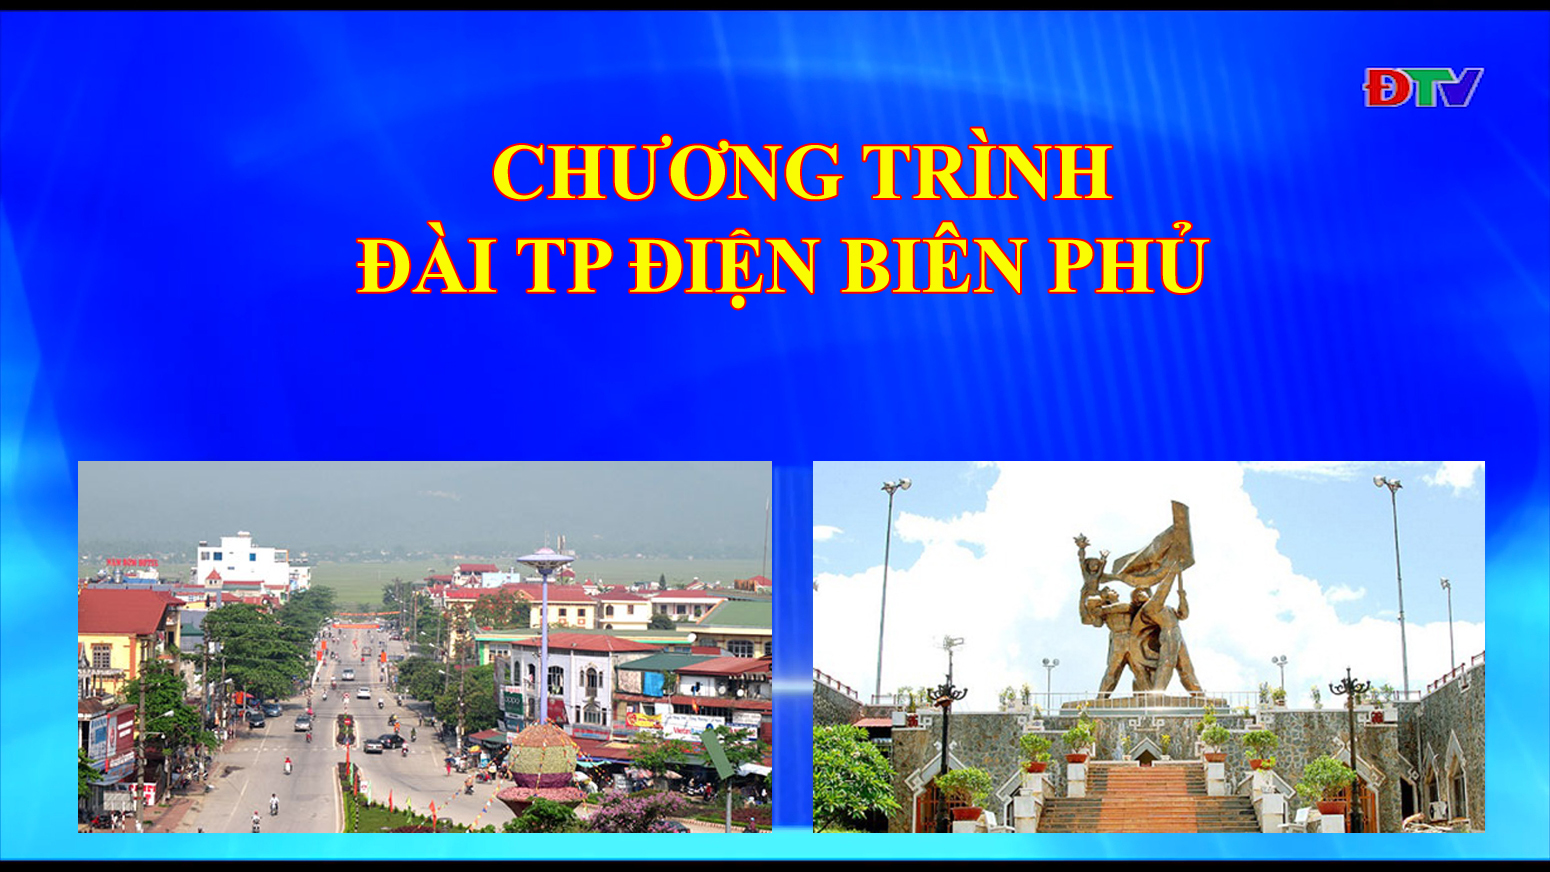 Đài thành phố Điện Biên Phủ (ngày 19-11-2019)